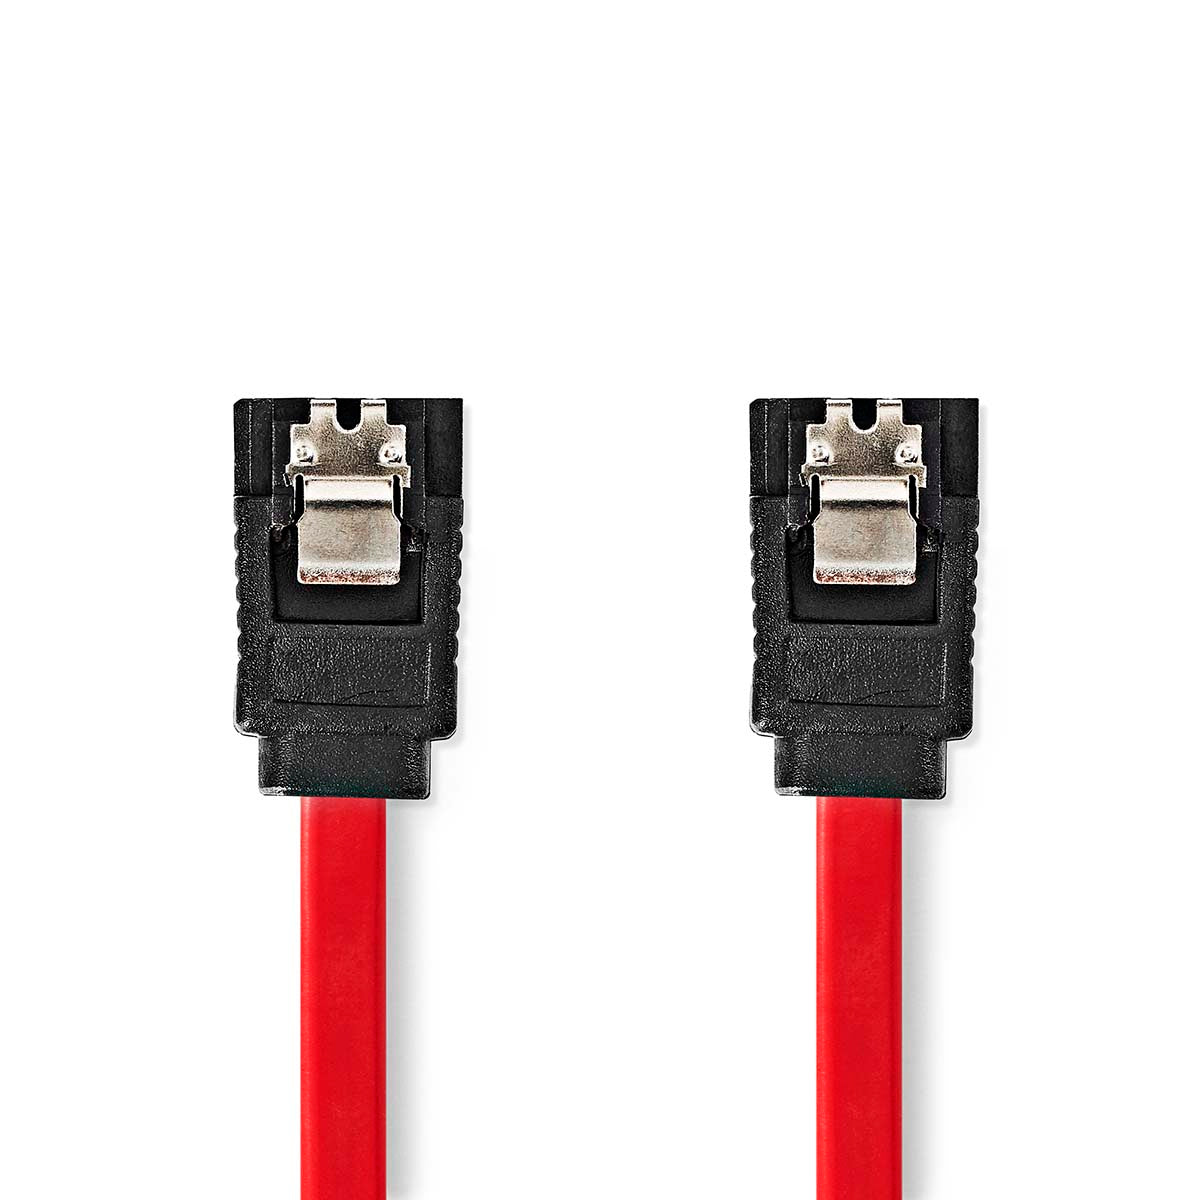 SATA Kabel | 1.5 Gbps | SATA 7-Pin-Buchse | SATA 7-Pin-Buchse | Vernickelt | 0.50 m | Flach | PVC | Red | Box